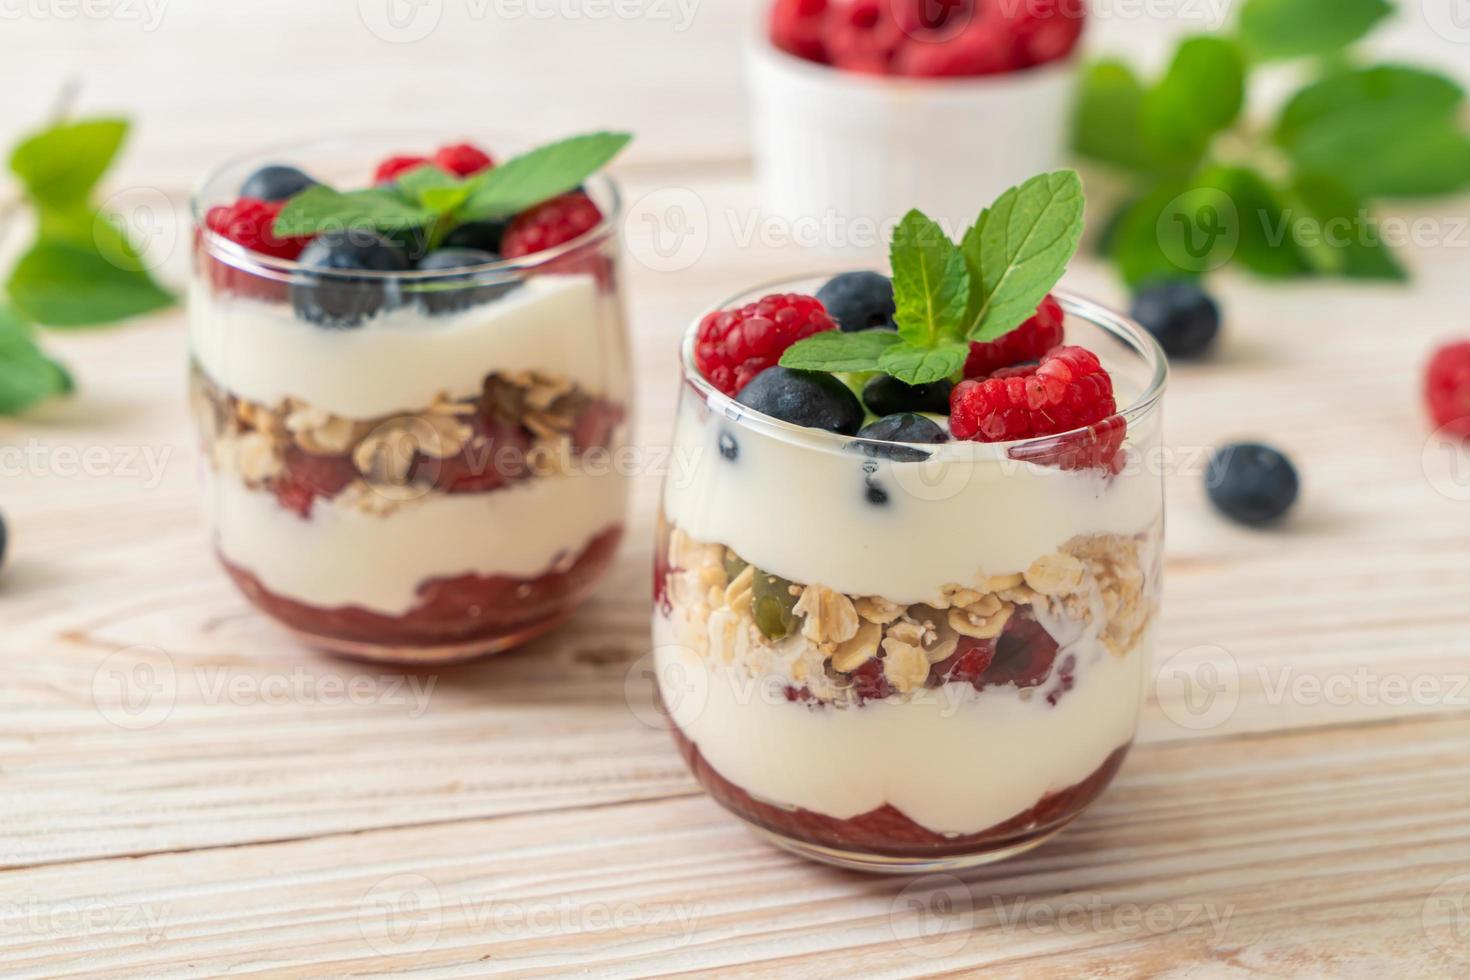 zelfgemaakte framboos en bosbes met yoghurt en granola - gezonde voedingsstijl foto